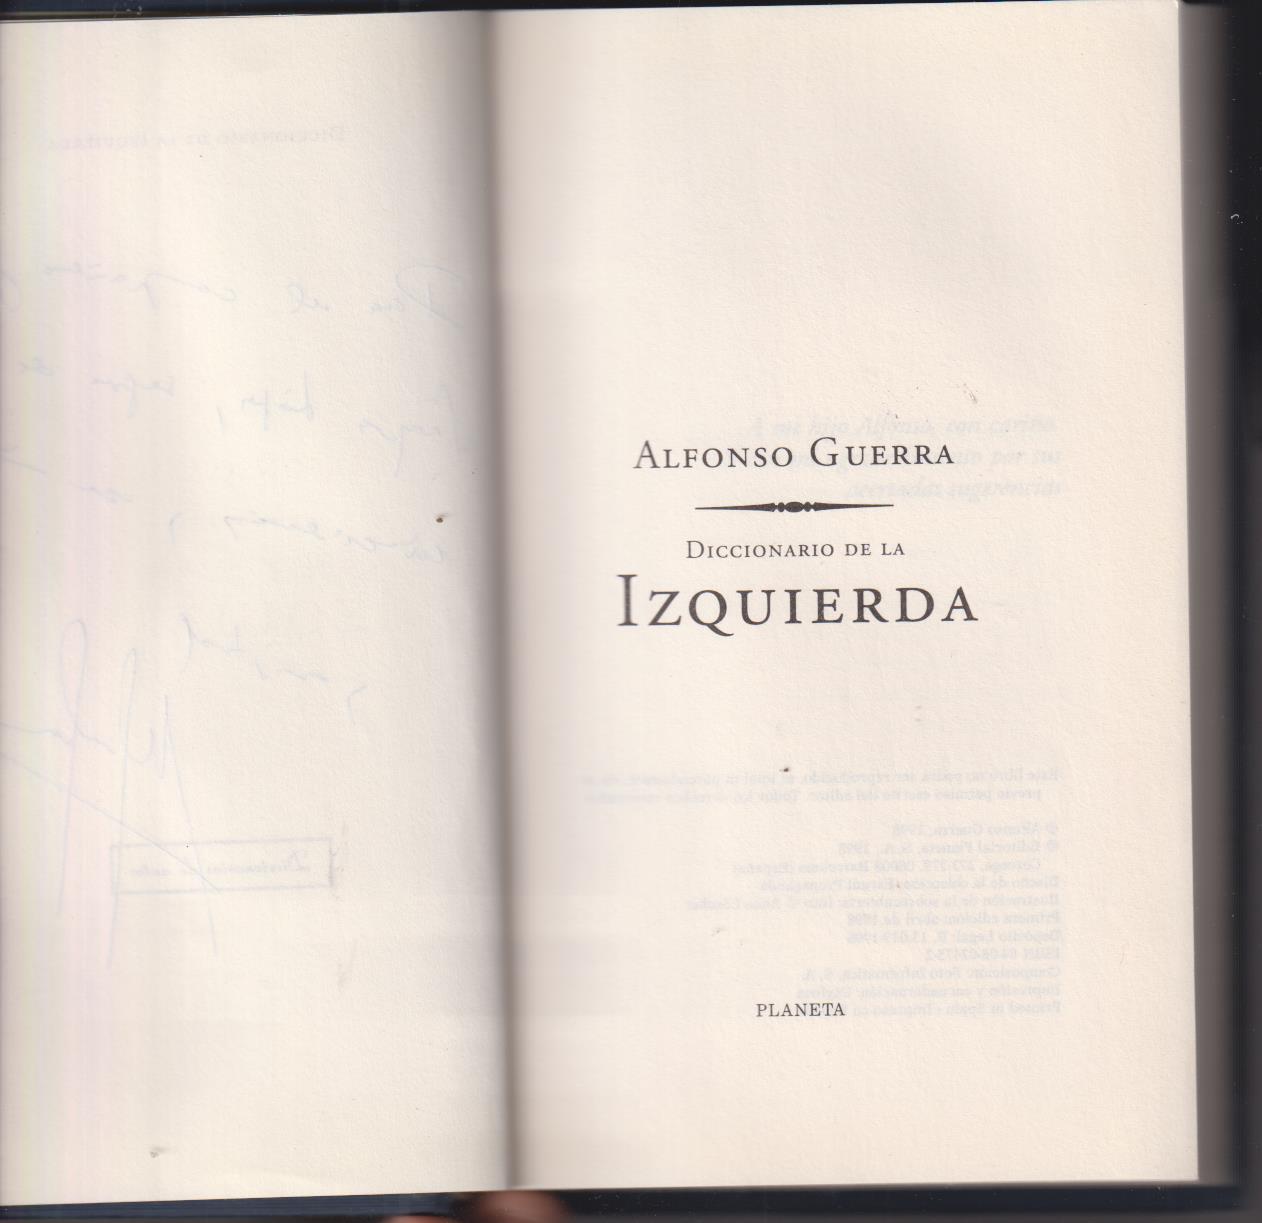 Alfonso Guerra. Diccionario de la Izquierda. Planeta 1998. Dedicado y firmado